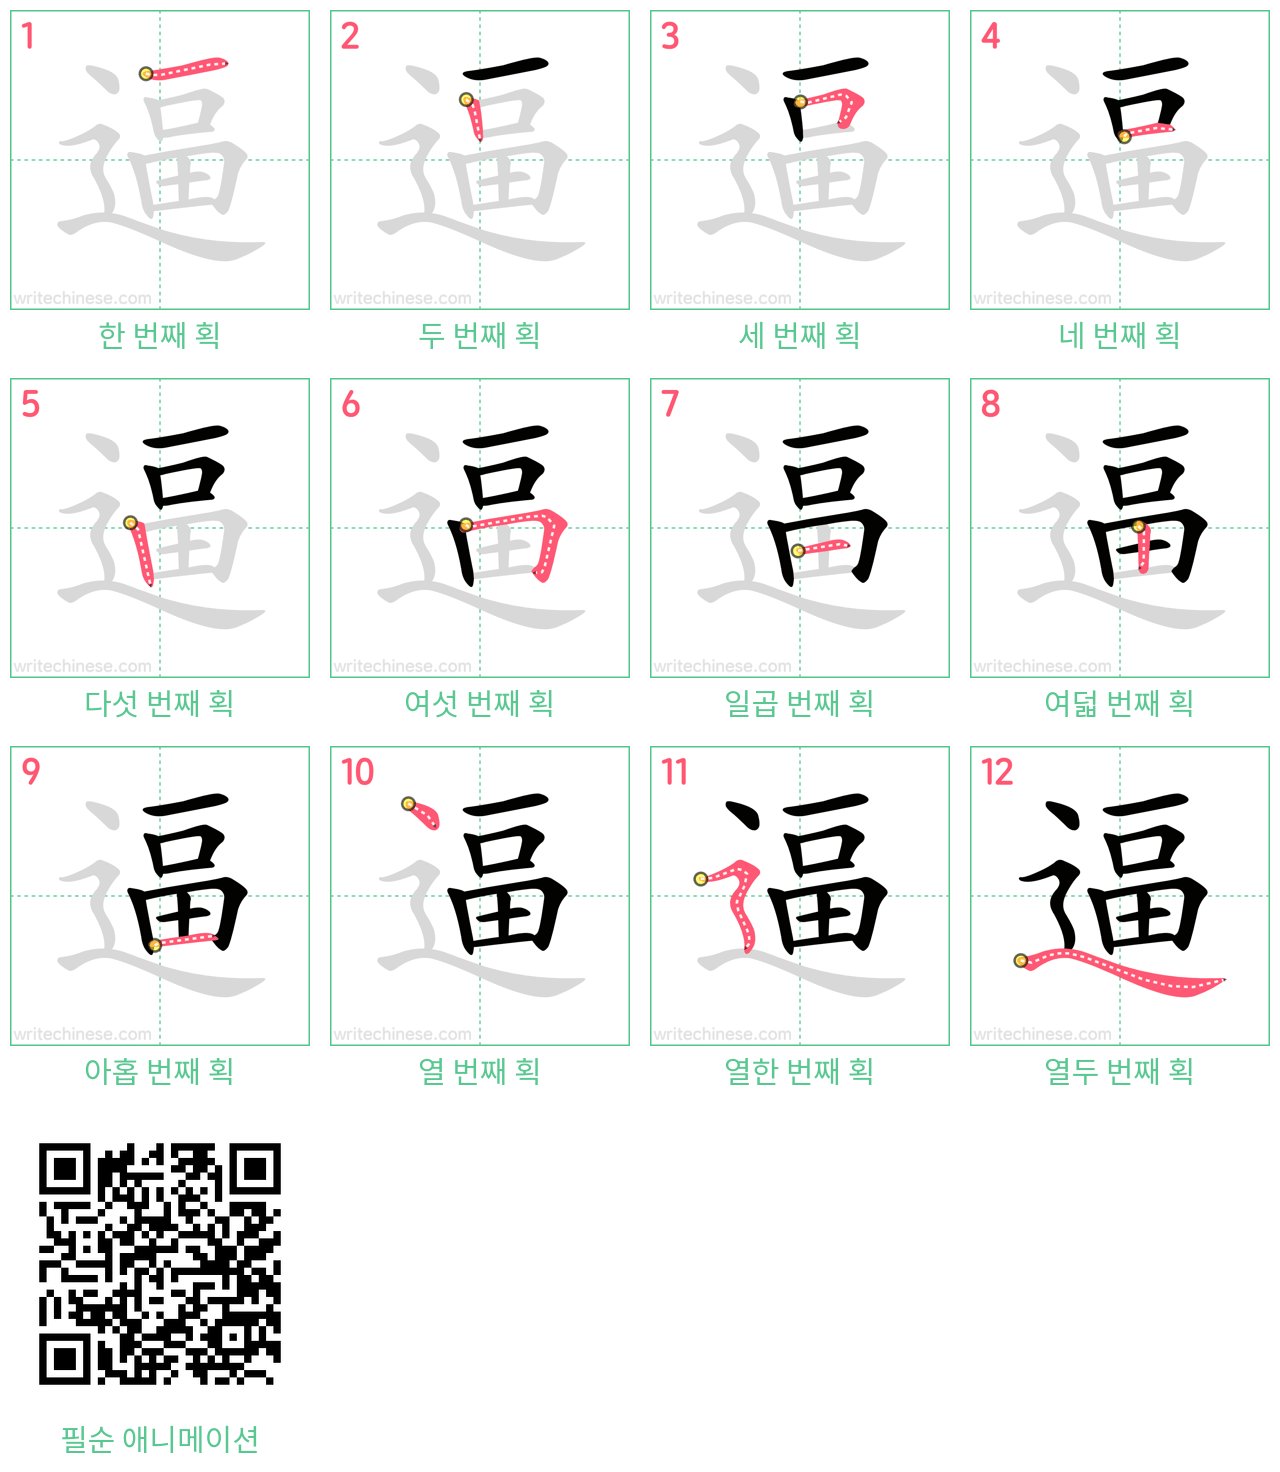 逼 step-by-step stroke order diagrams